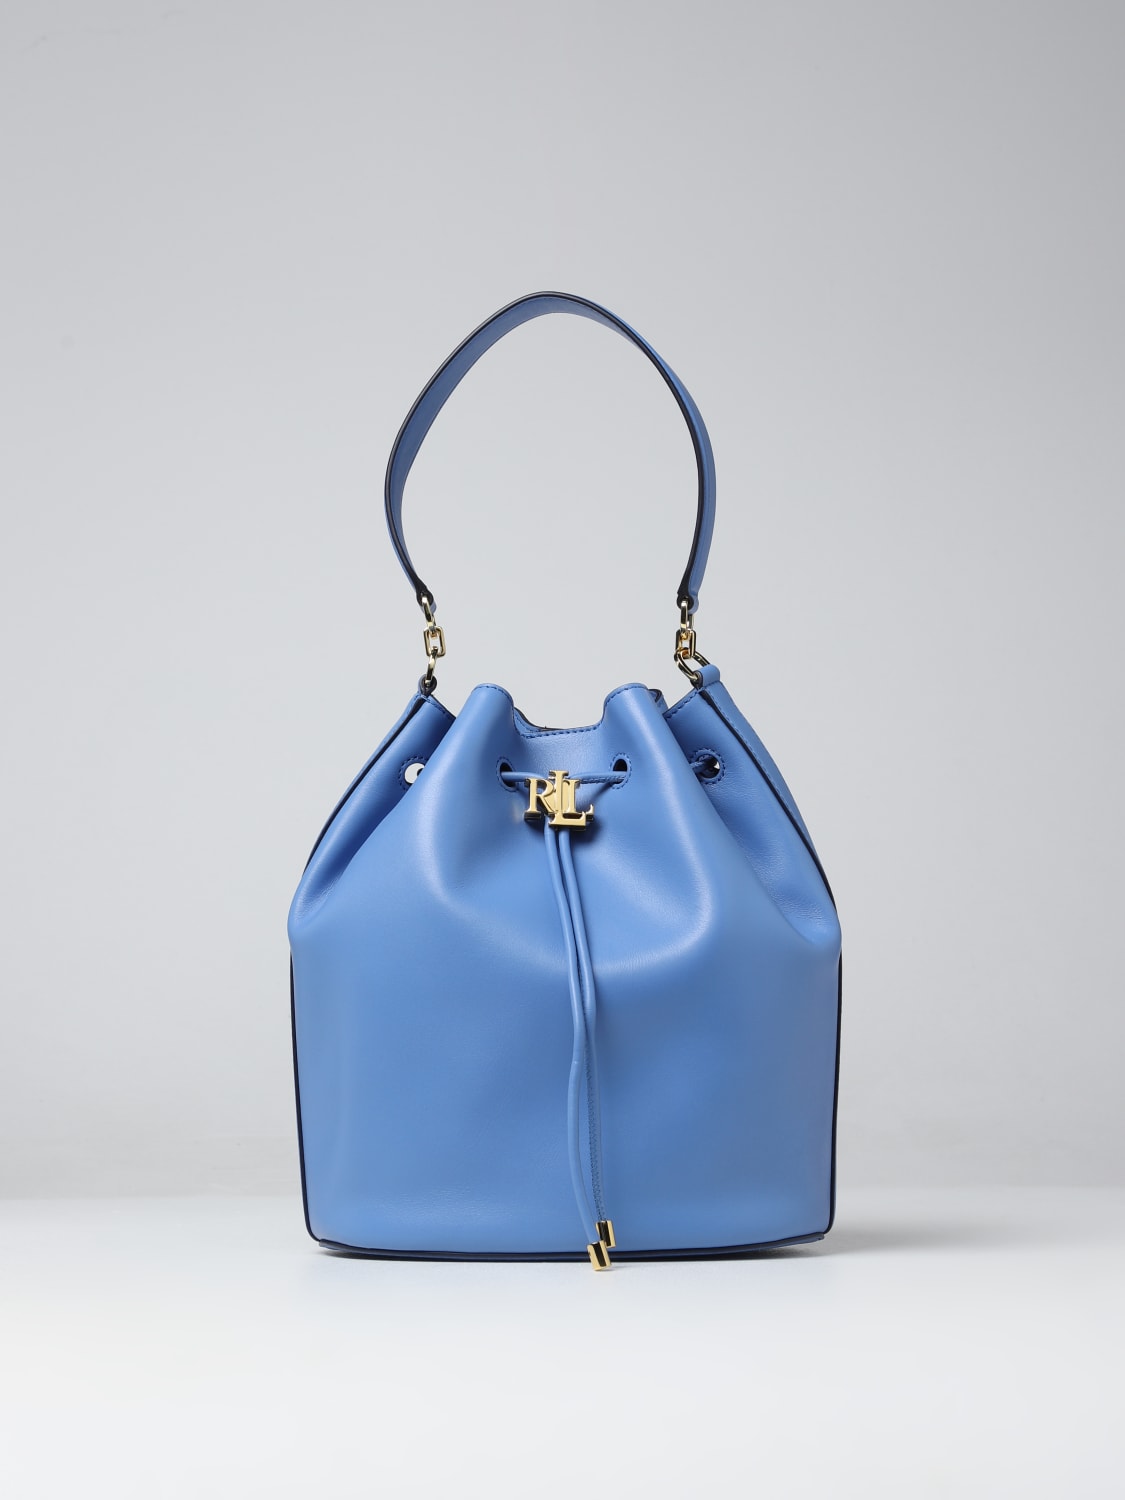 LAUREN RALPH LAUREN Handbags Lauren Ralph Lauren For Female for Women